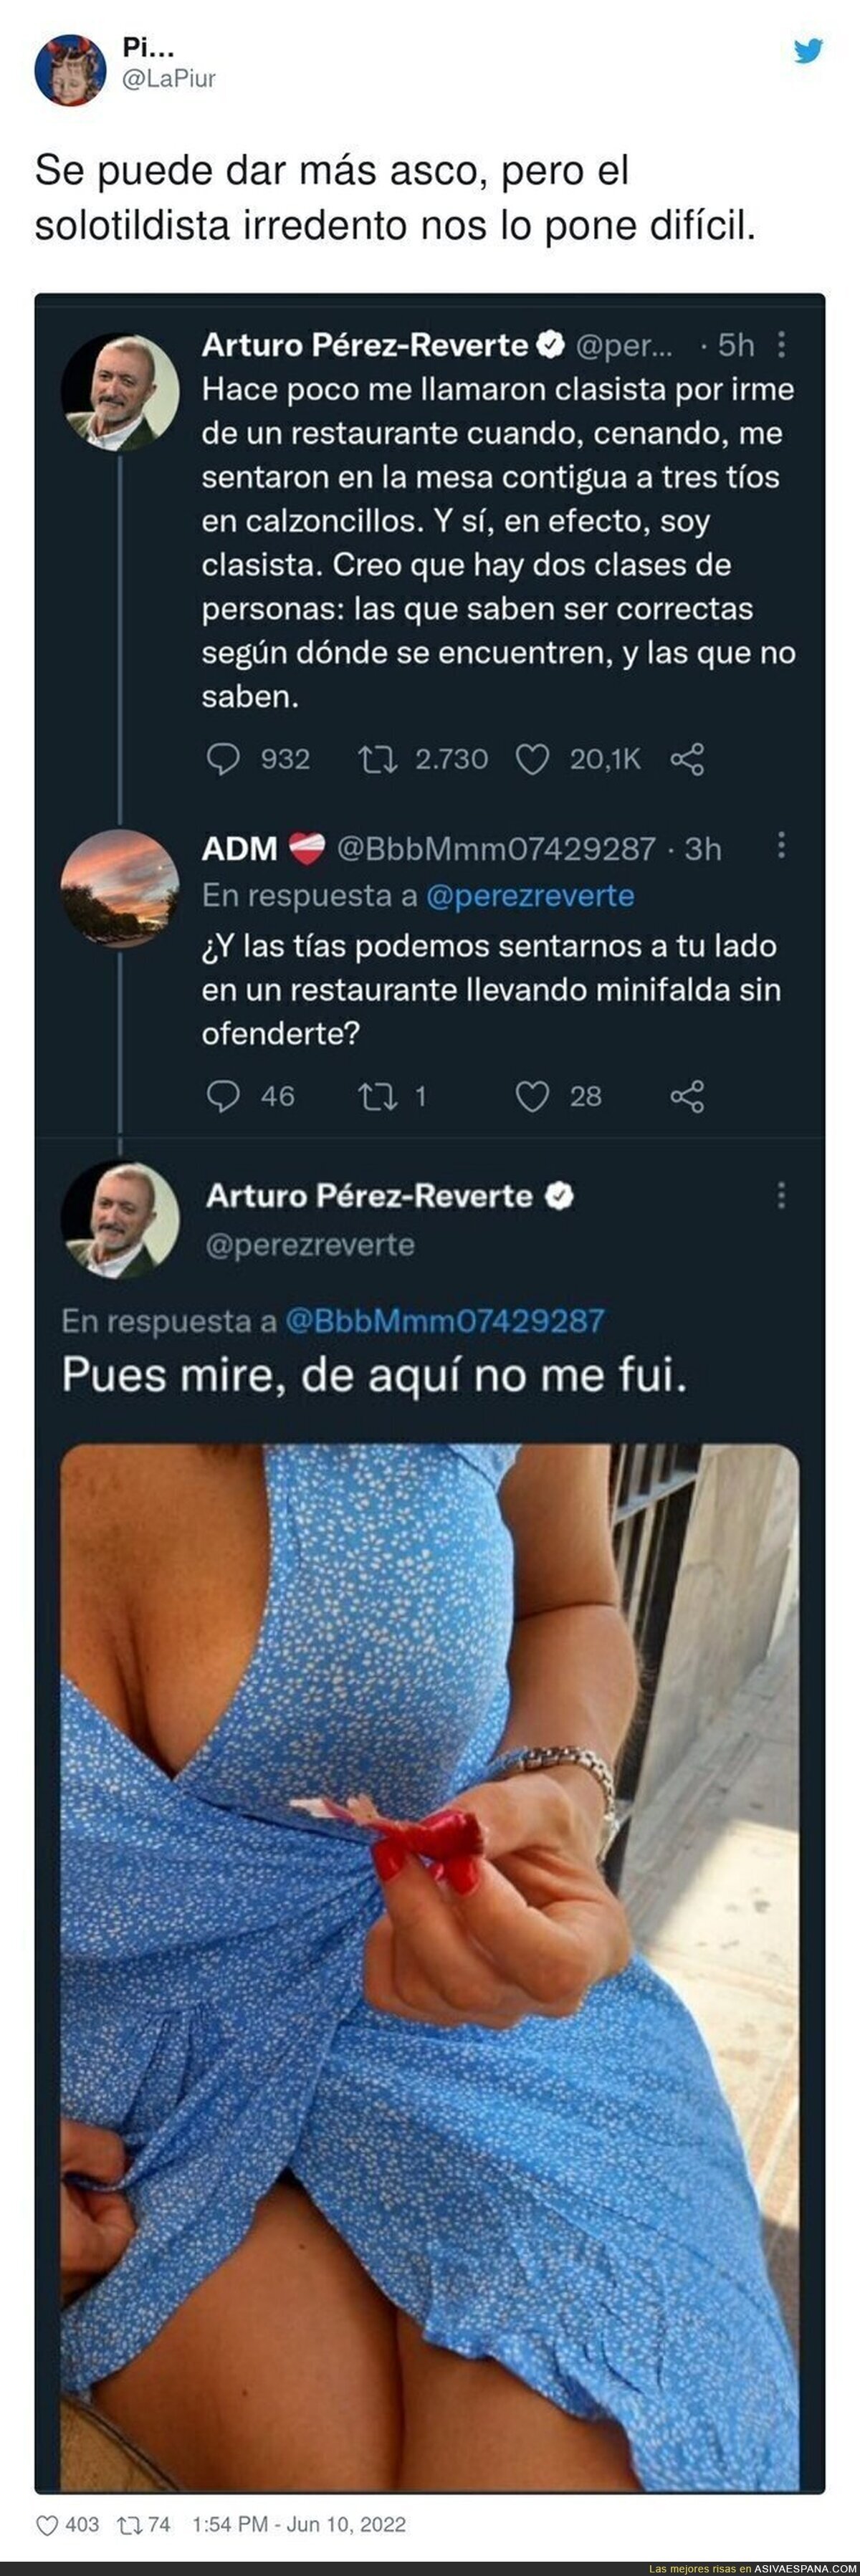 Arturo Pérez-Reverte da toda la repugnancia del mundo subiendo esta foto de una mujer a Twitter